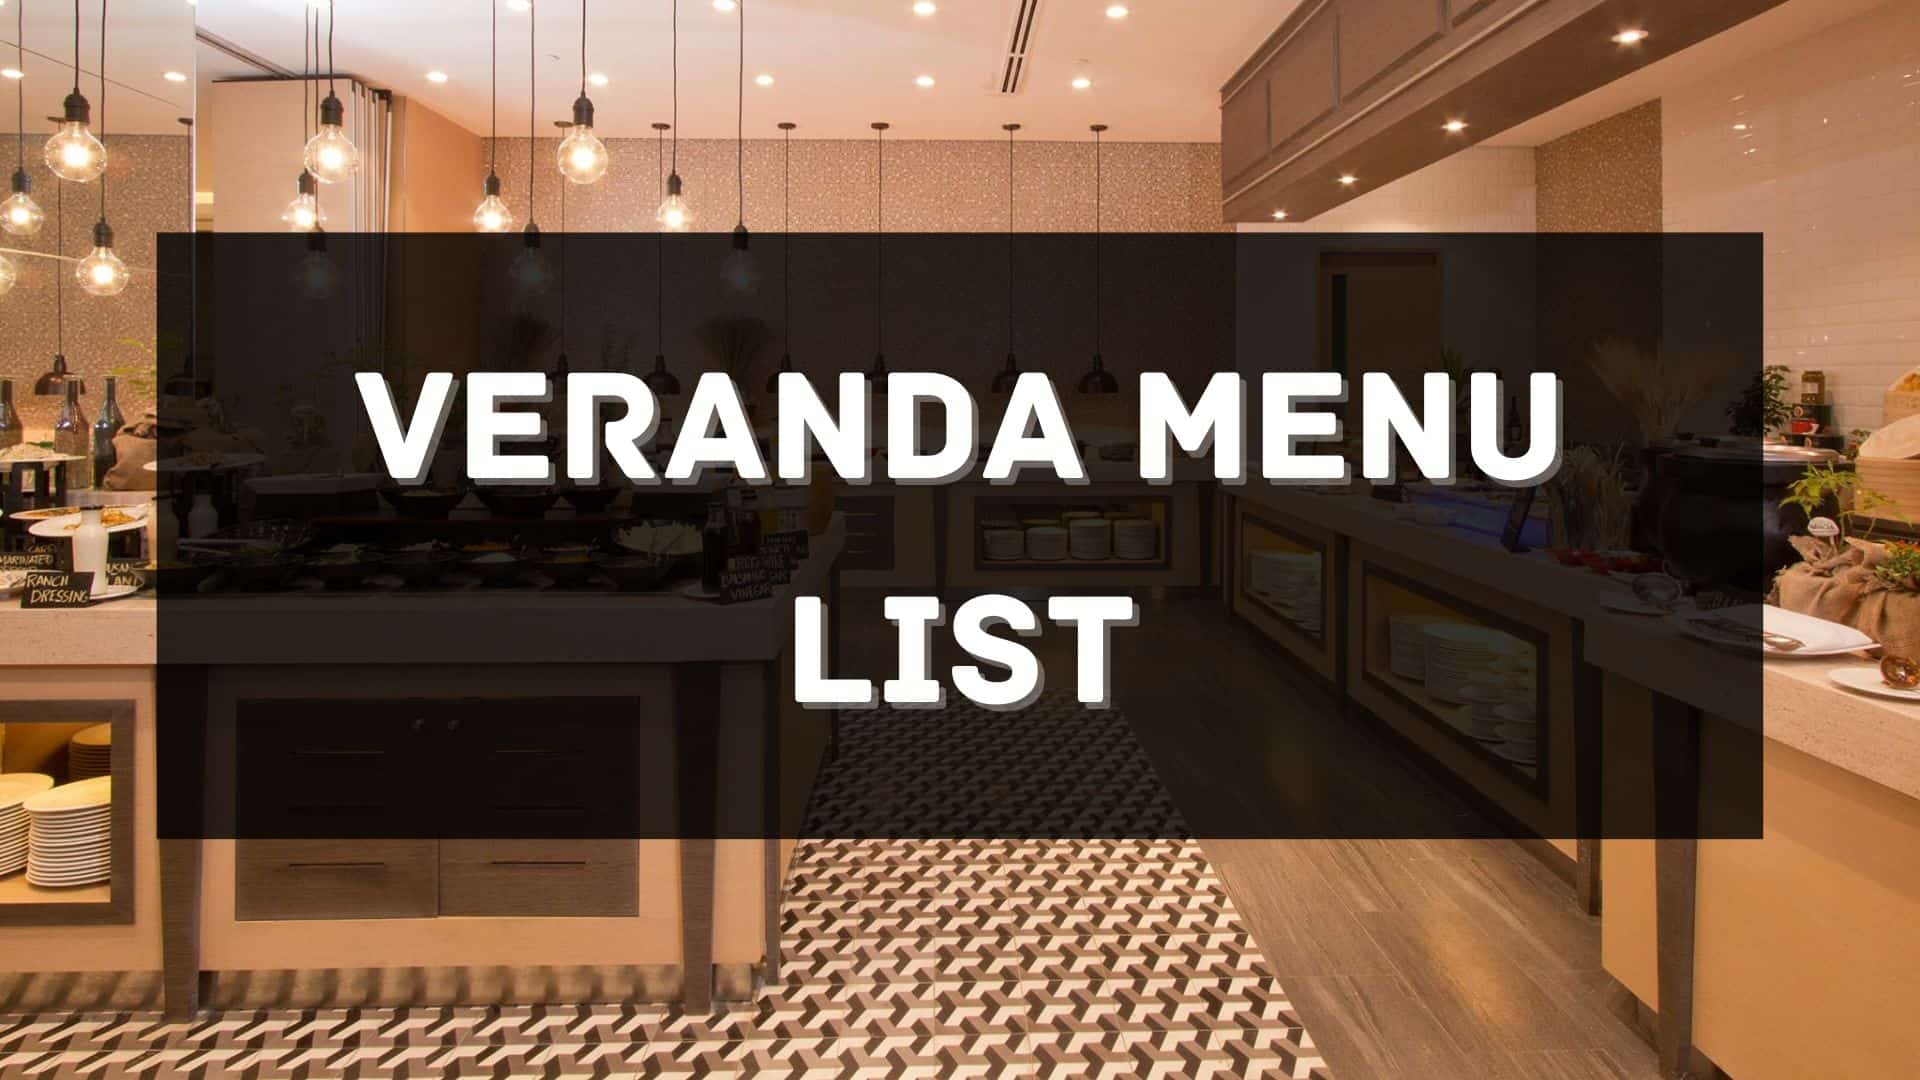 veranda menu prices philippines